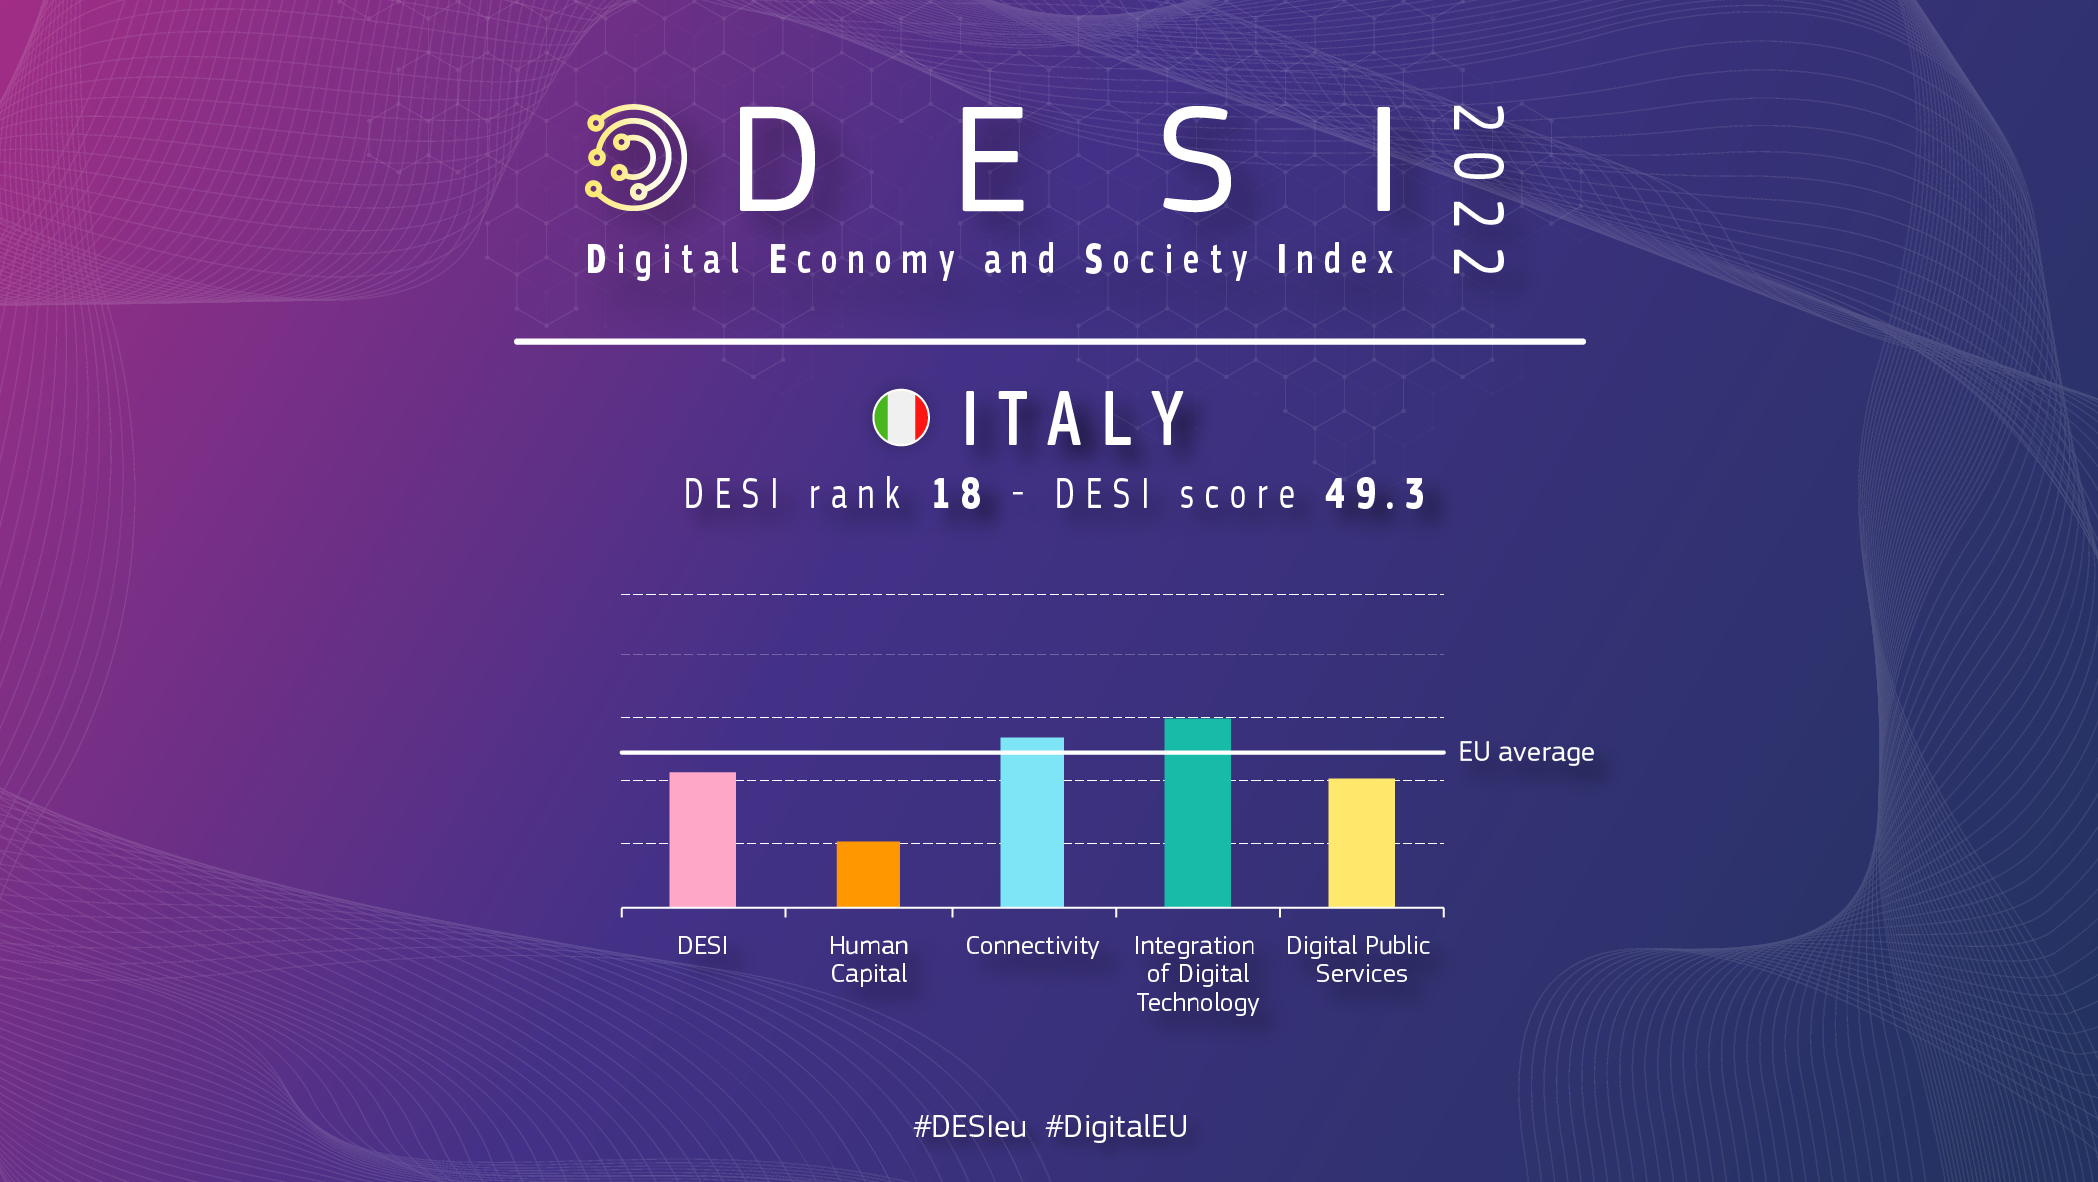 Aperçu graphique de l’Italie à DESI montrant un classement de 18 avec un score de 49,3